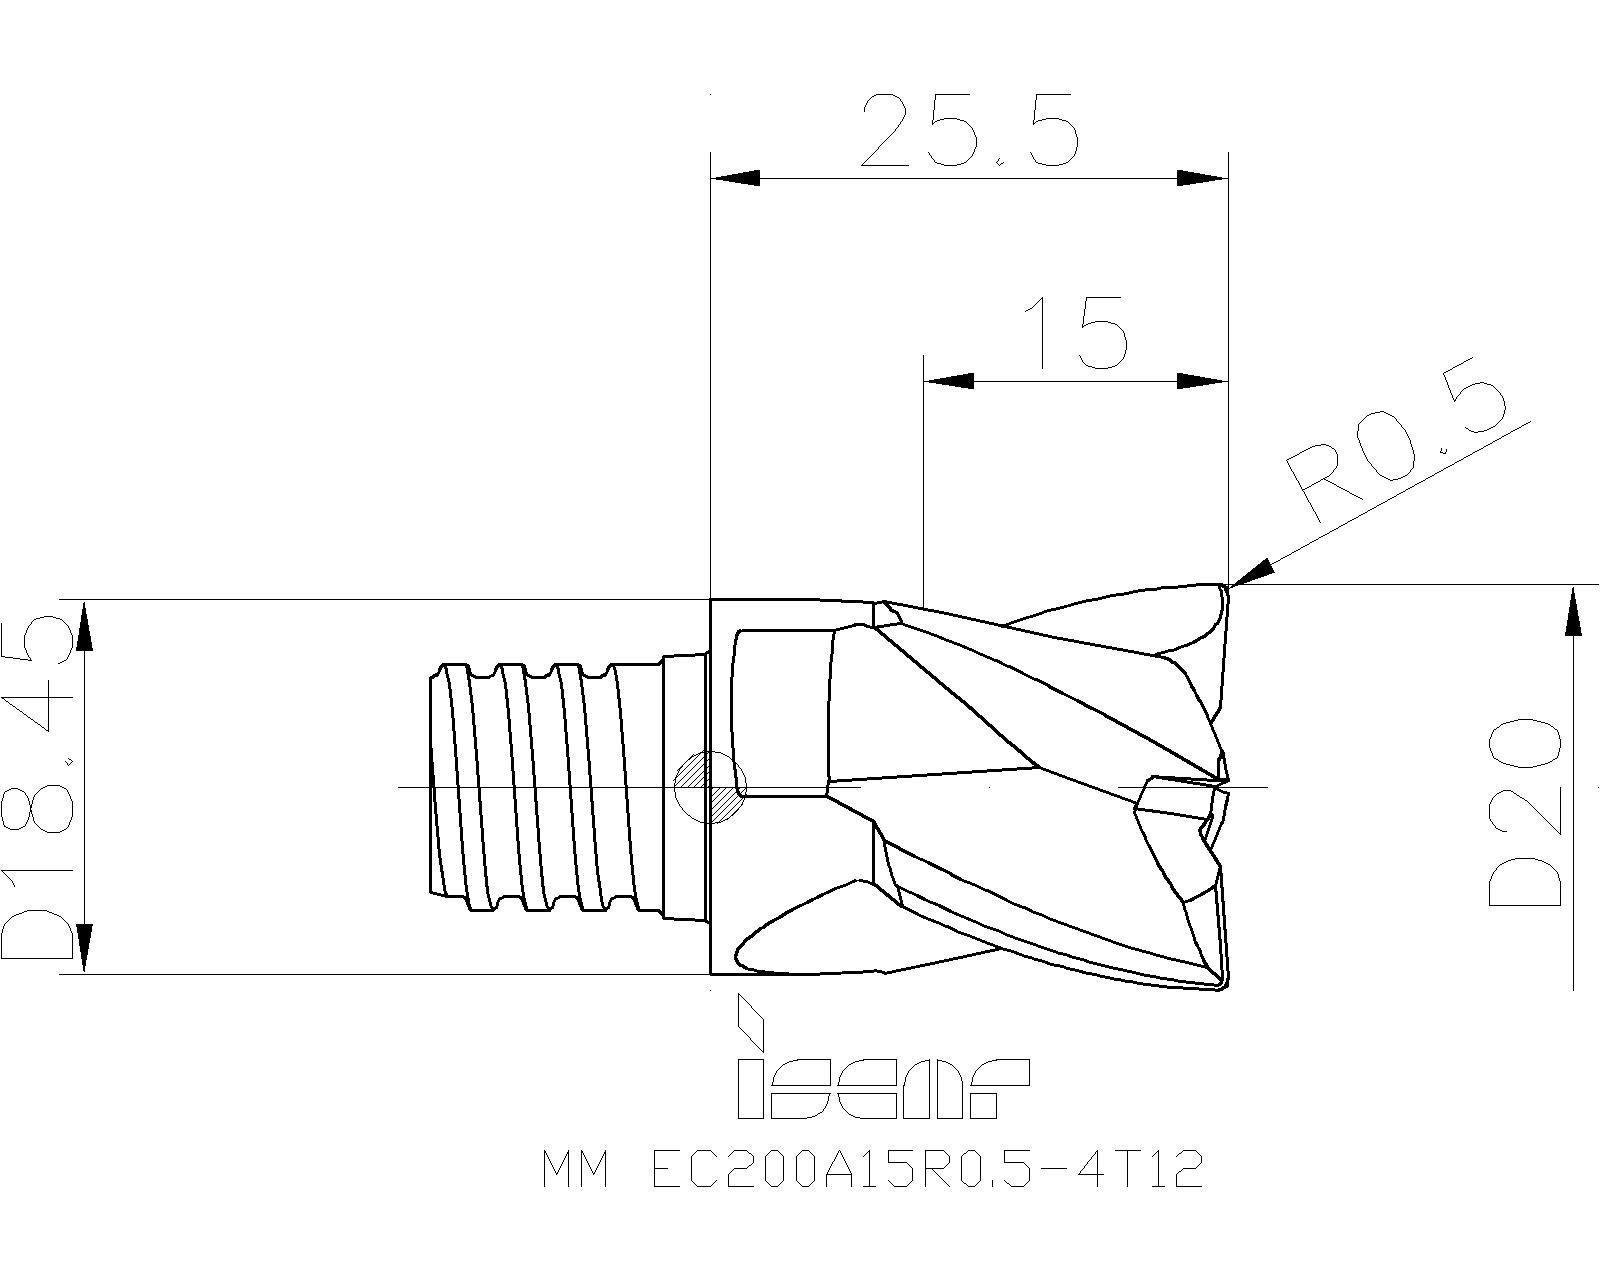 12mm 3 Flute Insert Details about   NEW Sandvik EH-ER25-12-014 ER25 Quick Change Tool Holder